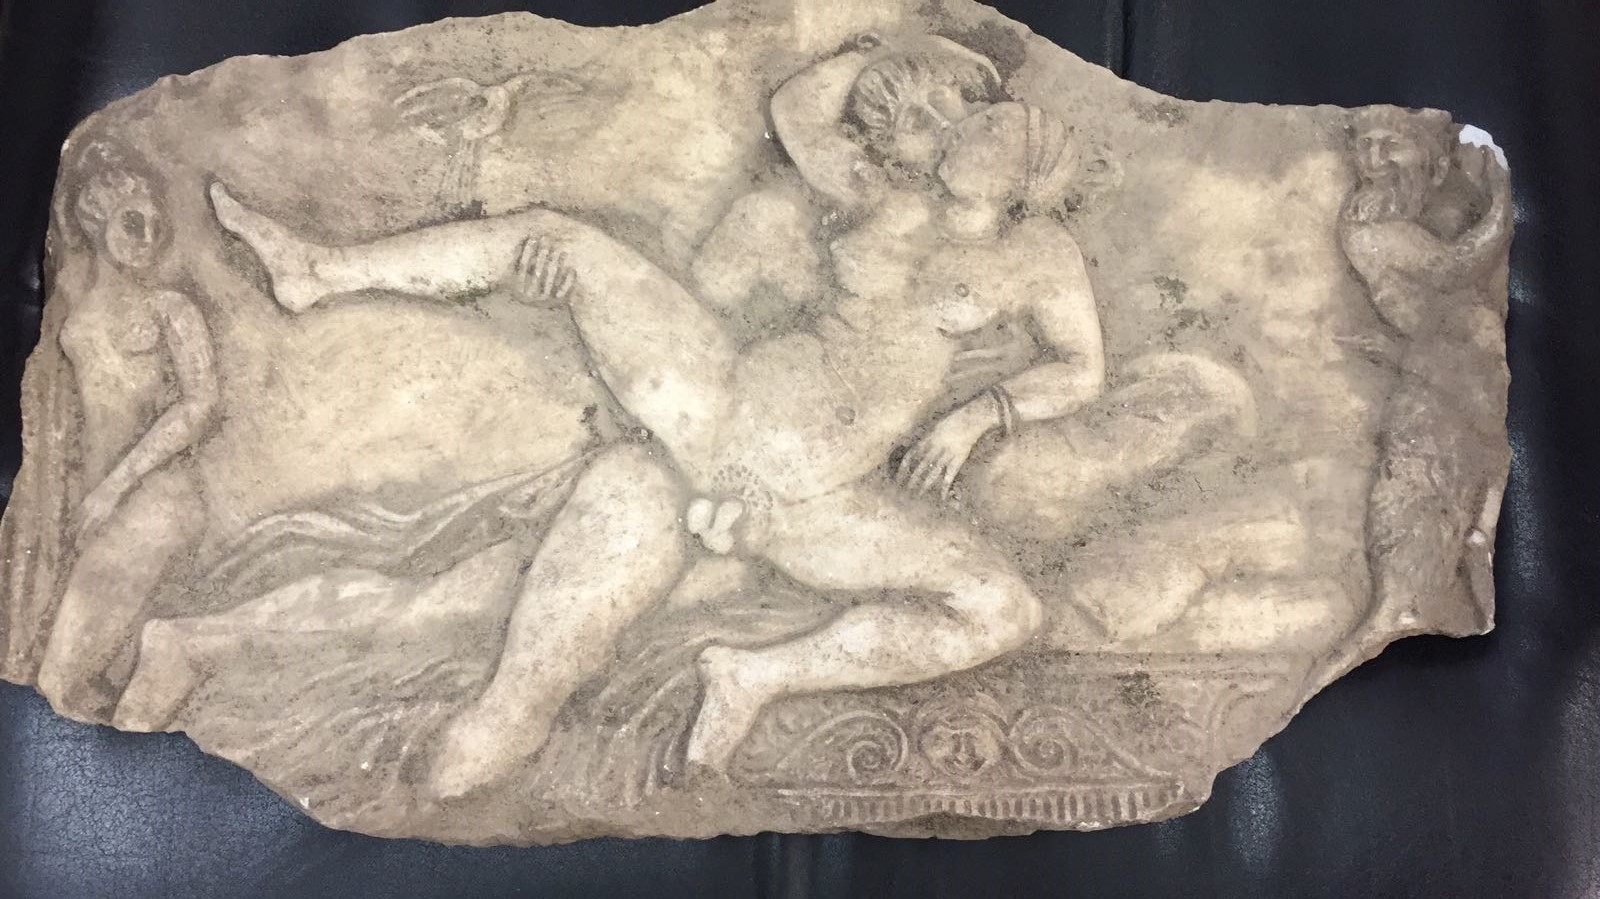 Un reperto presumibilmente di epoca romana recuperato nel blitz di ieri a Nuova Ostia